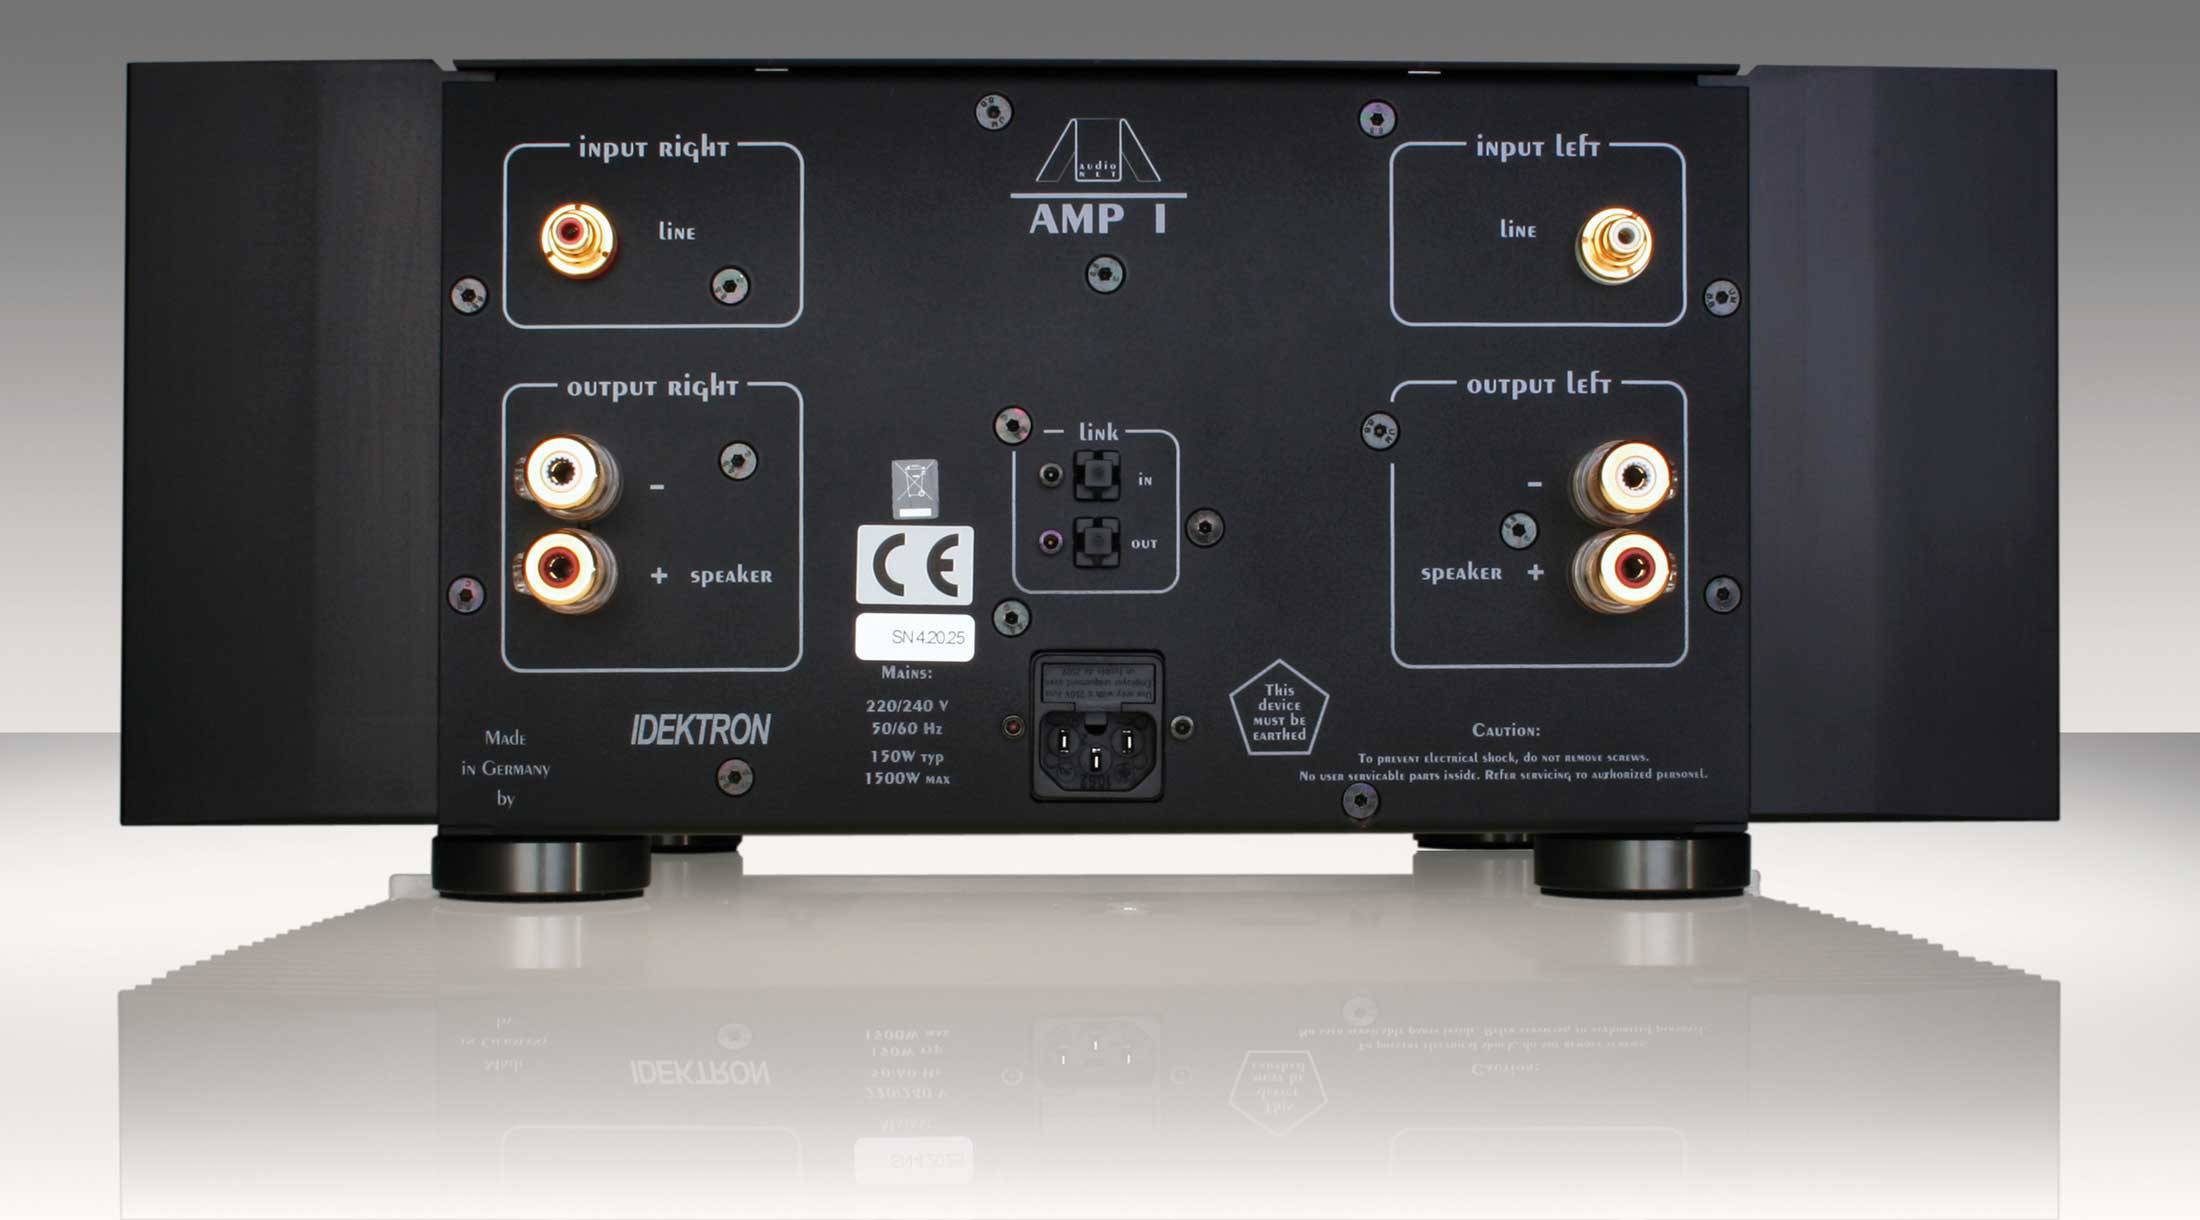 Audionet AMP